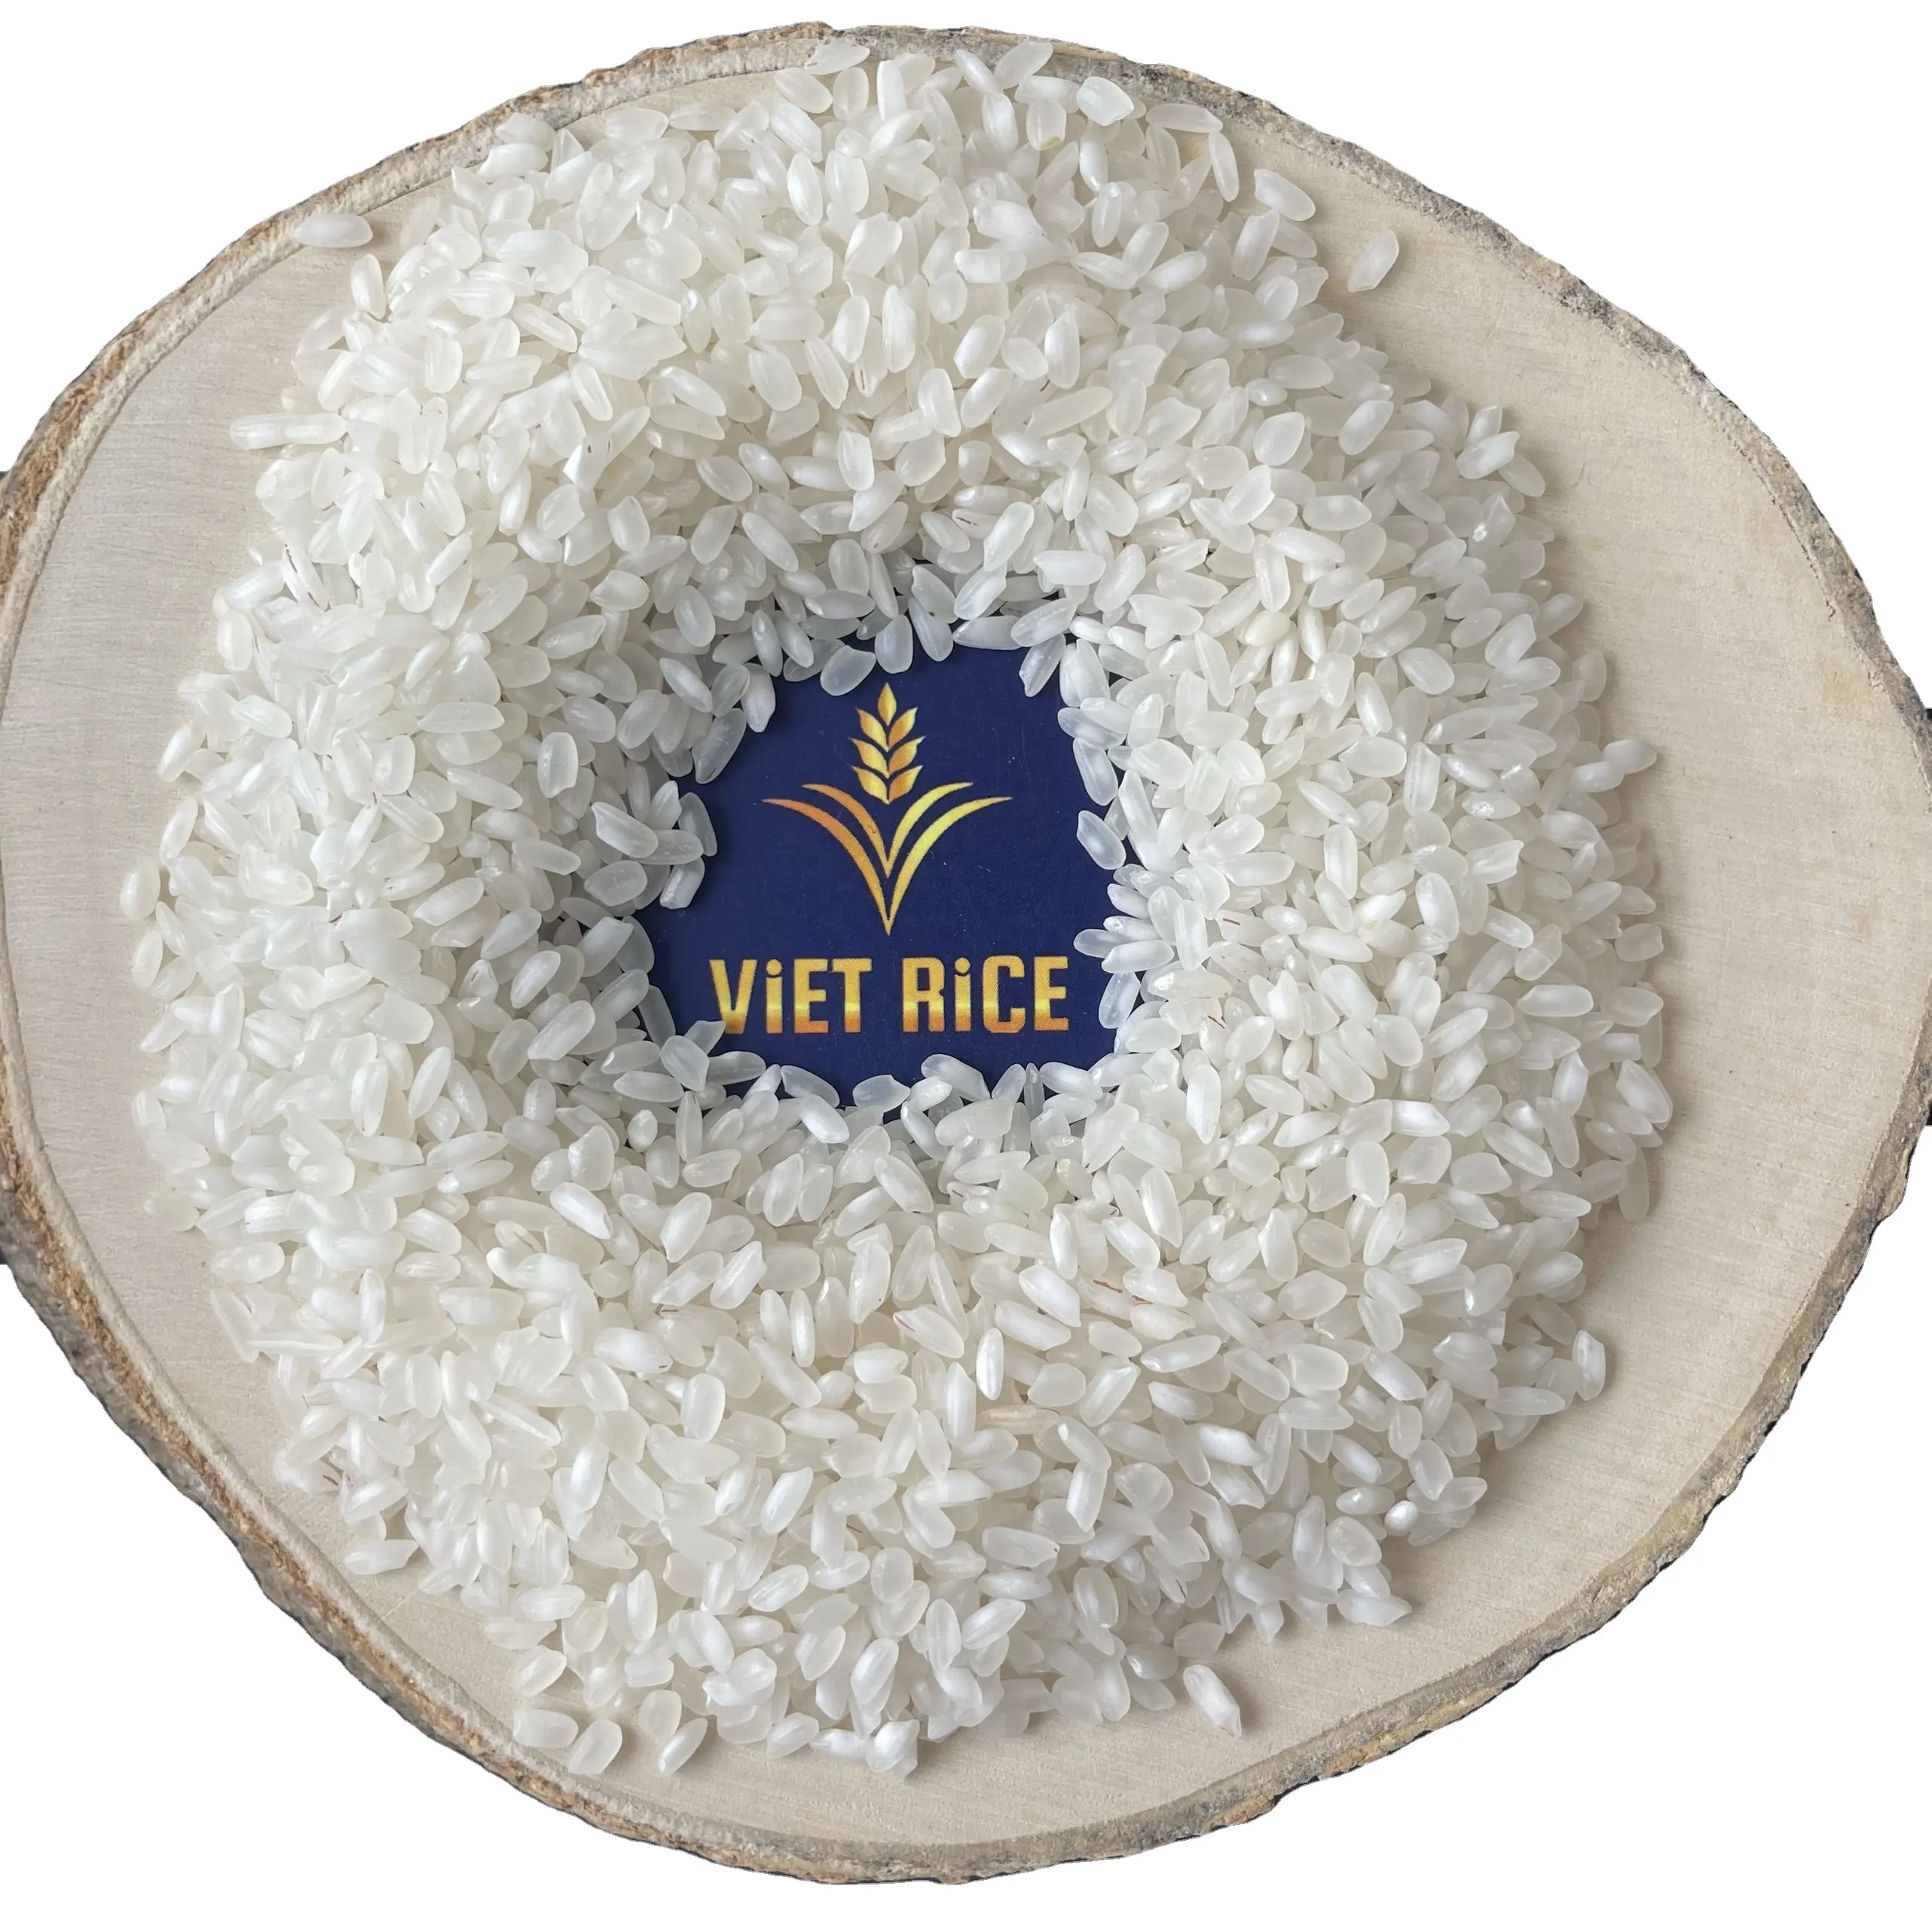 אורז קלרוז - אורז בינוני כמו אורז יפני באיכות מוגבלת זרעים עגולים גדולים שגודלים בוייטנאם (צרו קשר עם וואטסאפ +84 7693408)